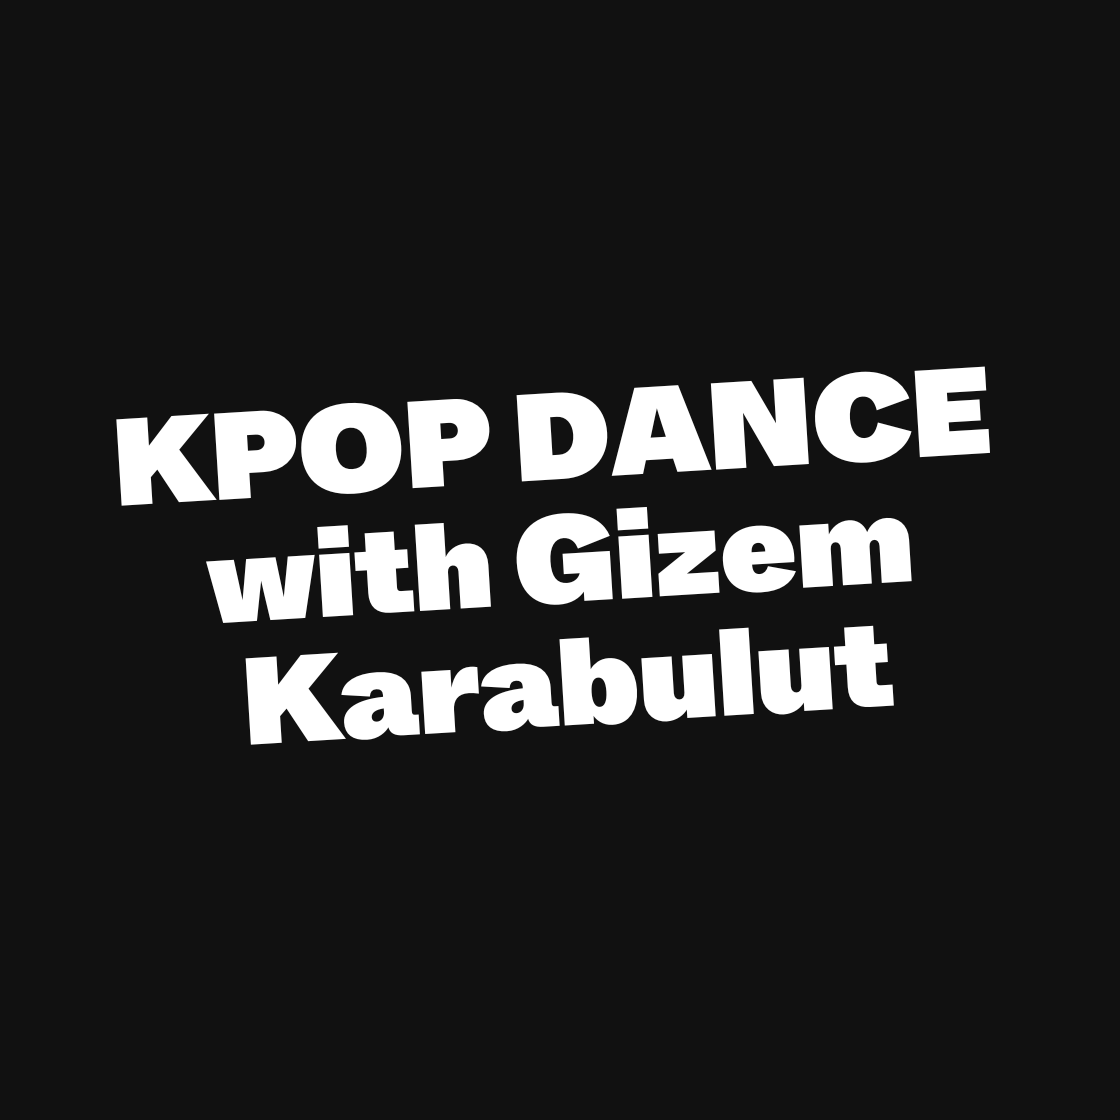 KPOP DANCE with Gizem Karabulut